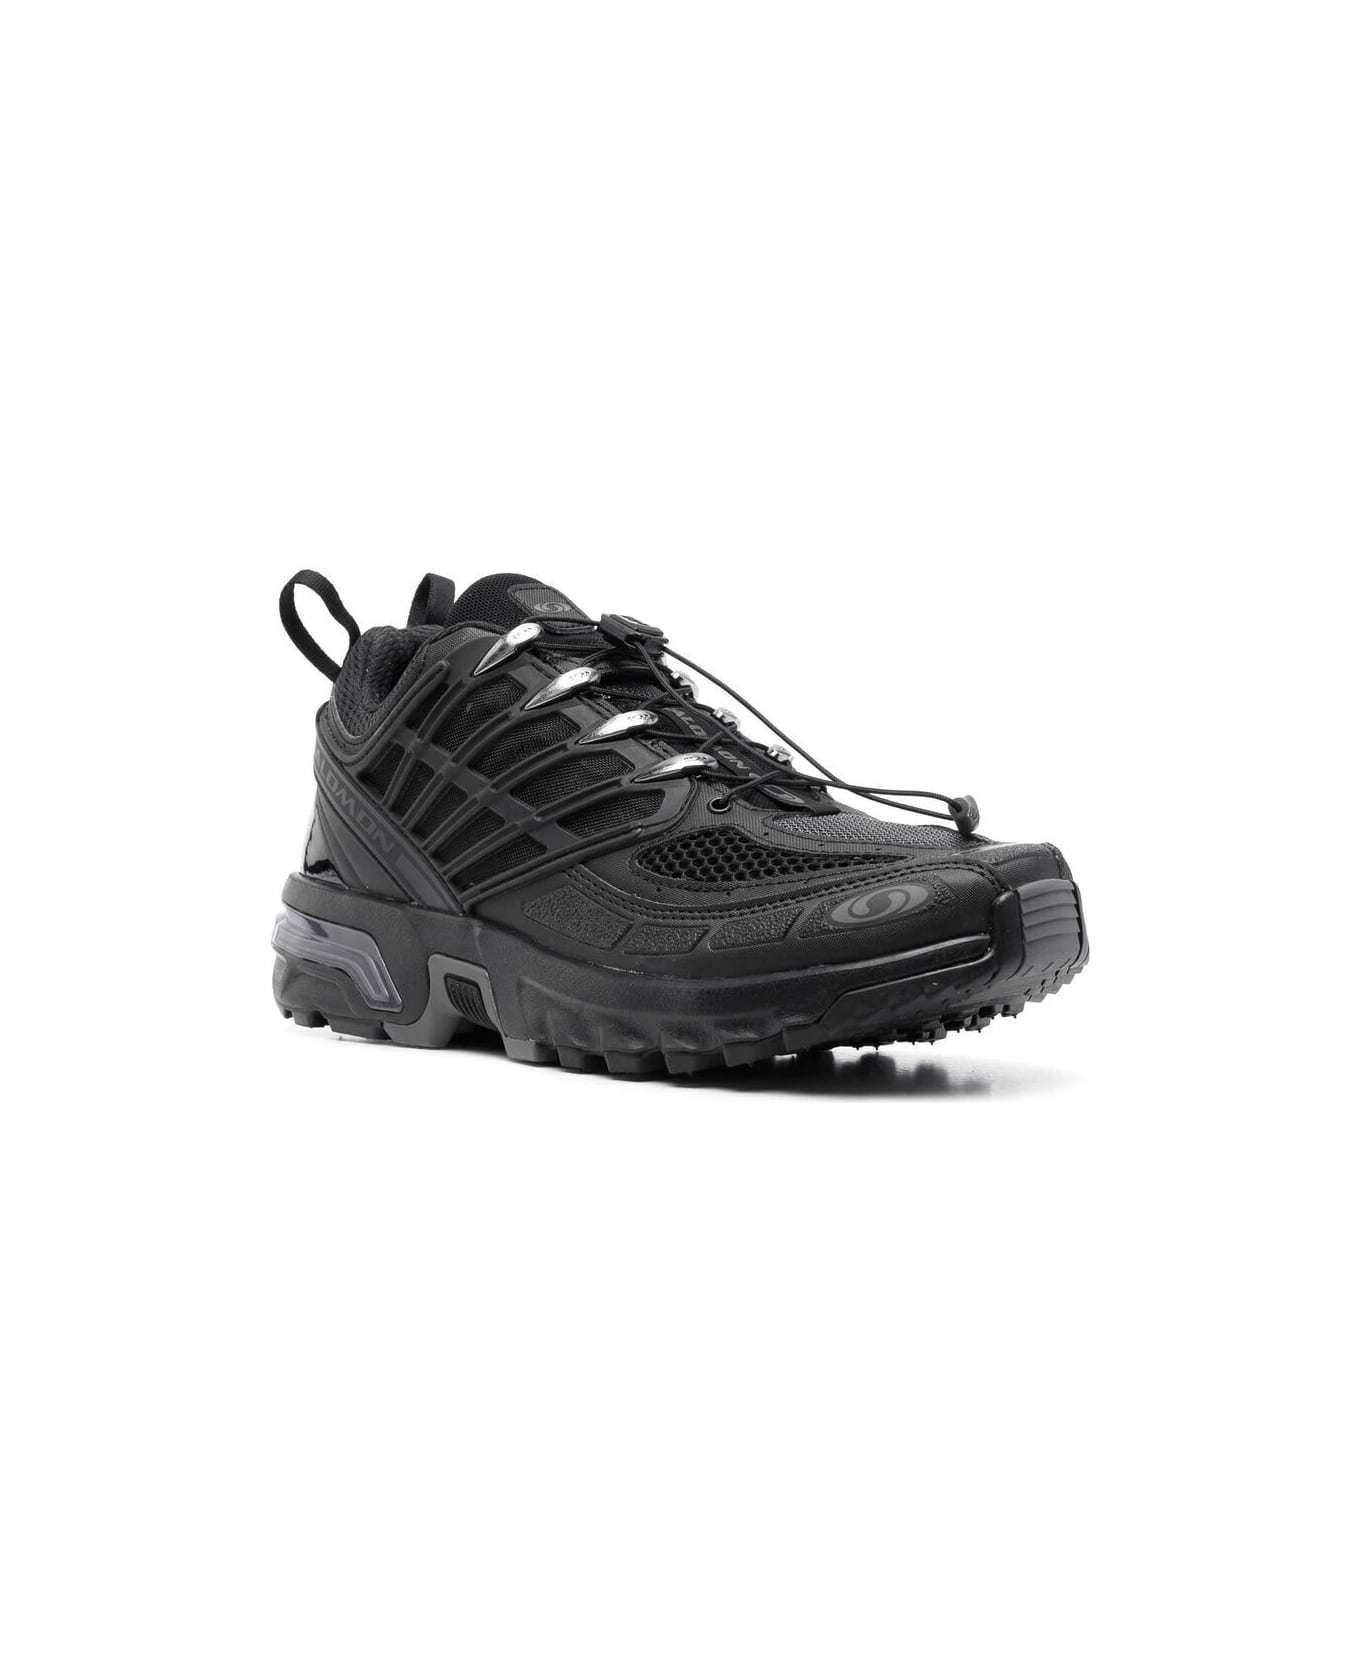 Salomon Acs Pro Sneakers - Black Black Black